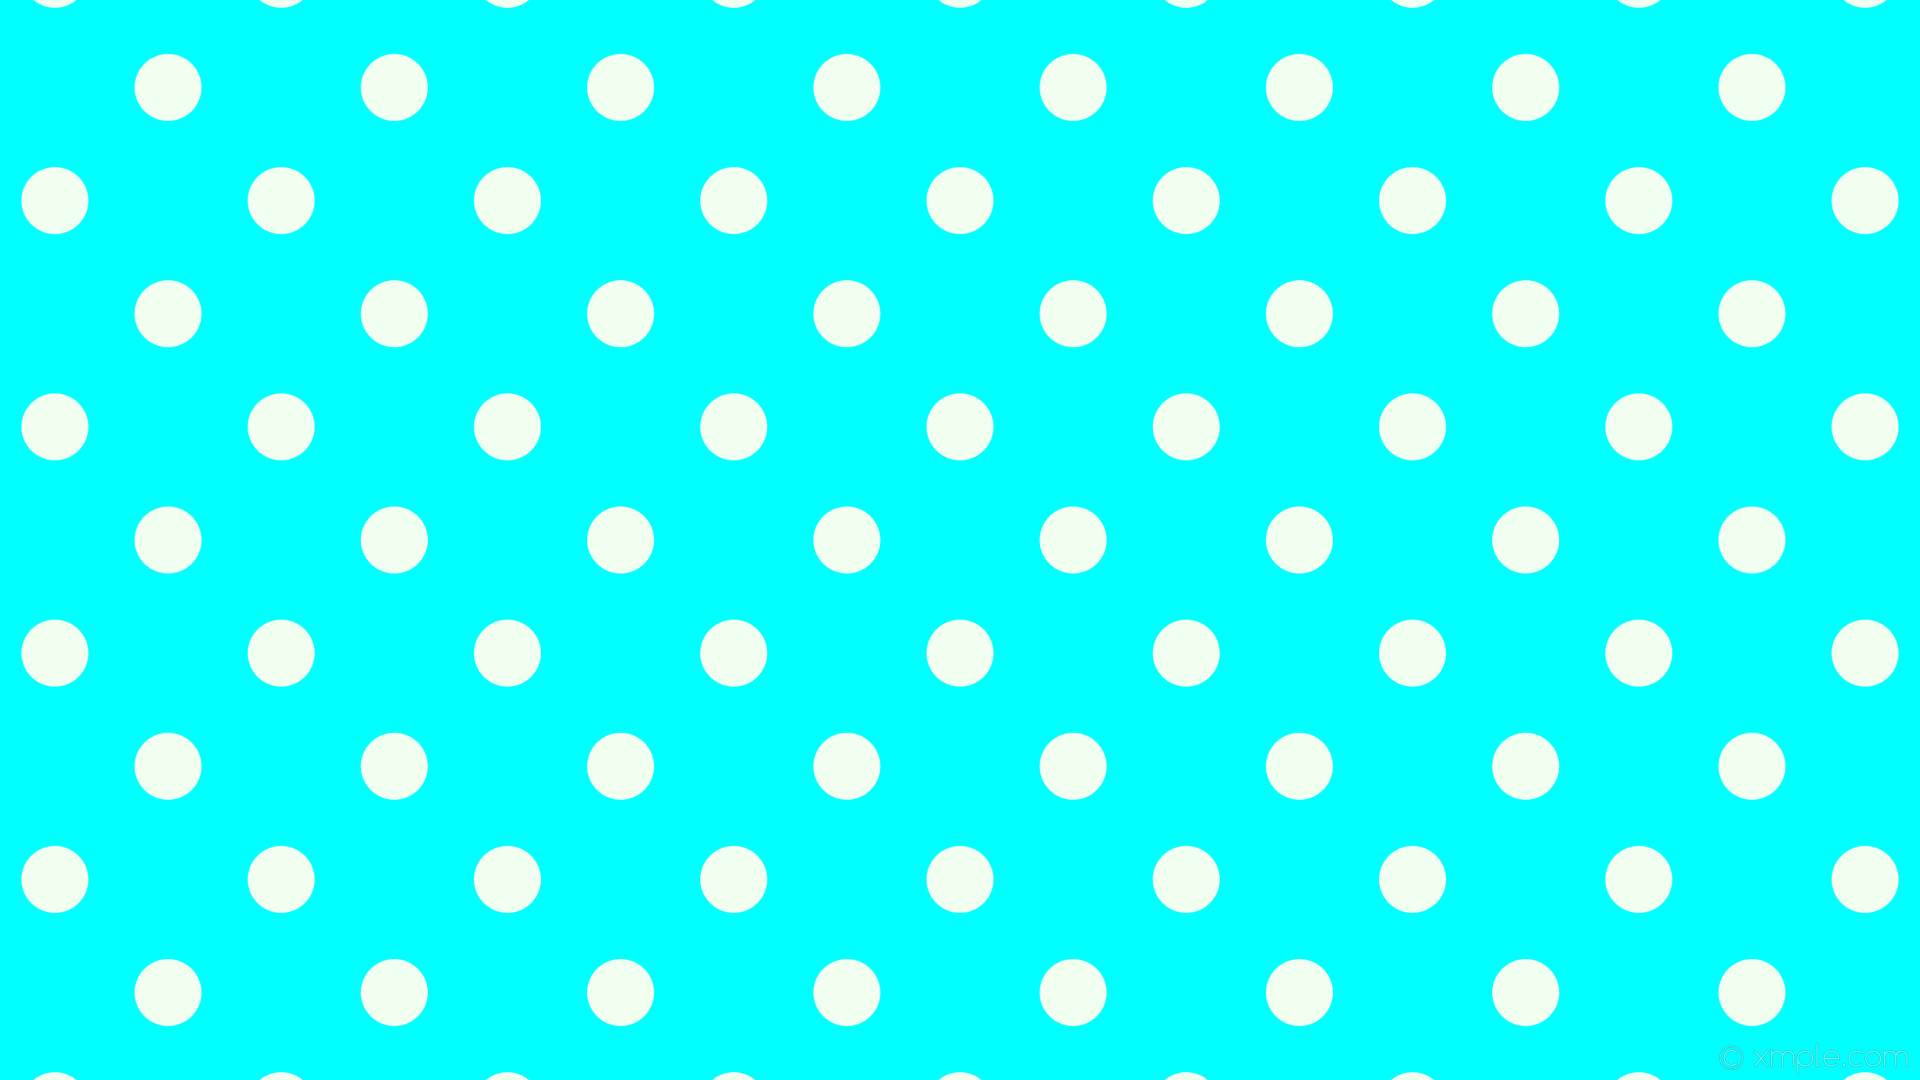 1920x1080 wallpaper white spots blue polka dots aqua cyan honeydew #00ffff #f0fff0  135Â° 67px